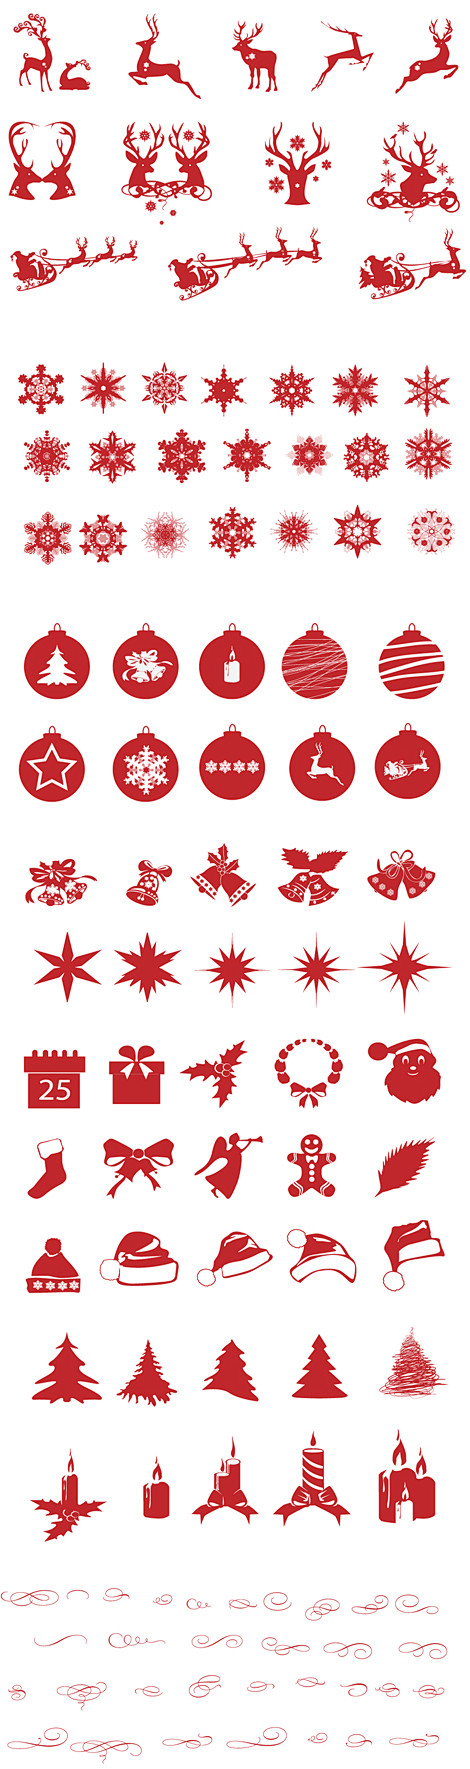 可爱圣诞节ICON图标 ui设计